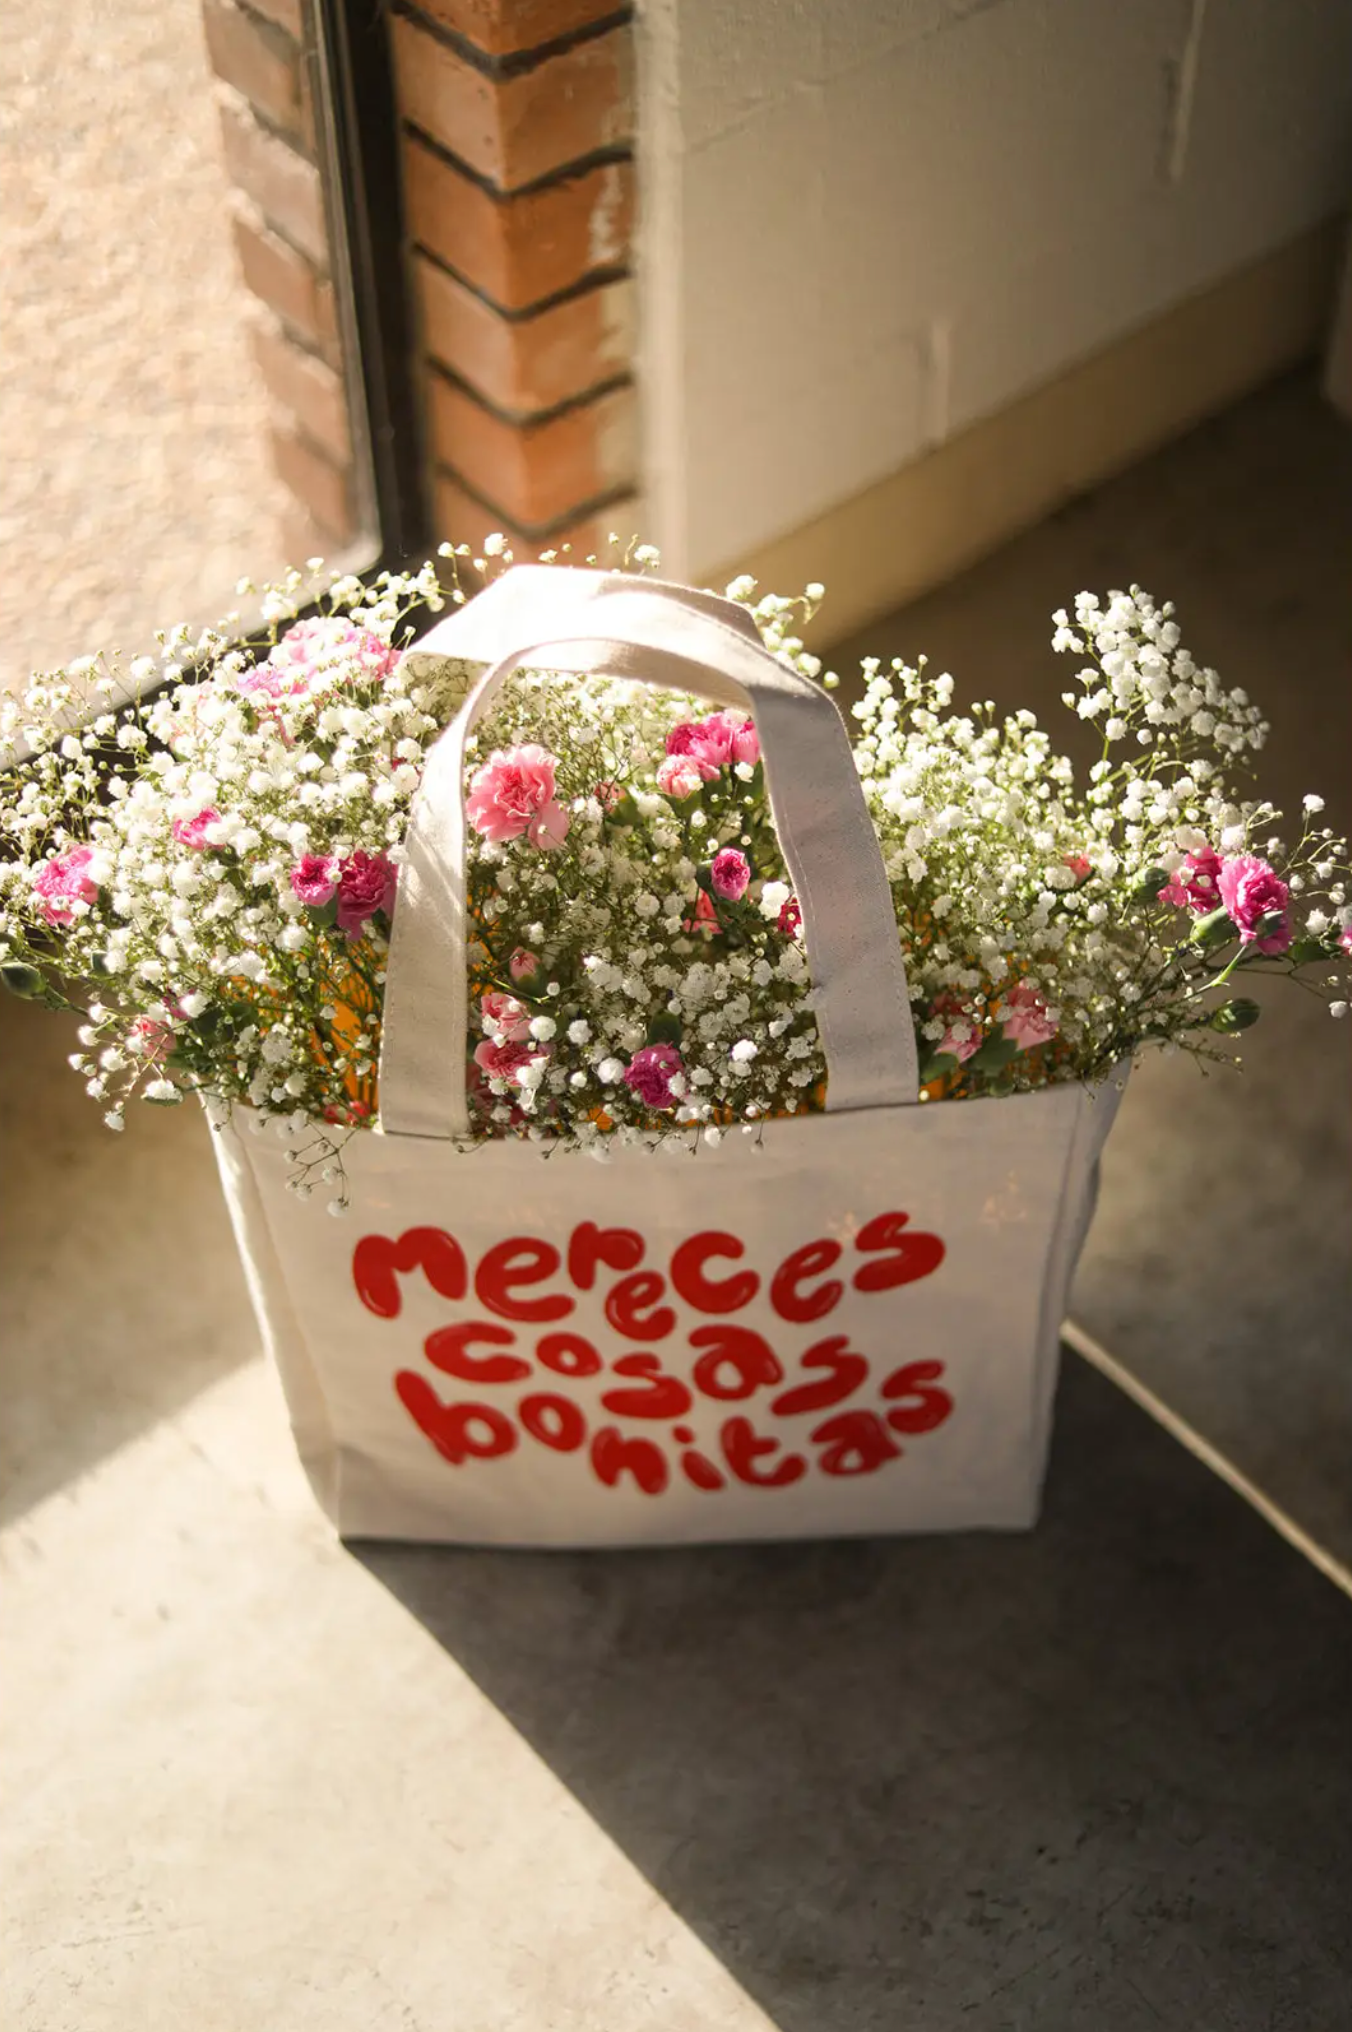 Mereces Cosas Bonitas (you deserve nice things) Tote Bag